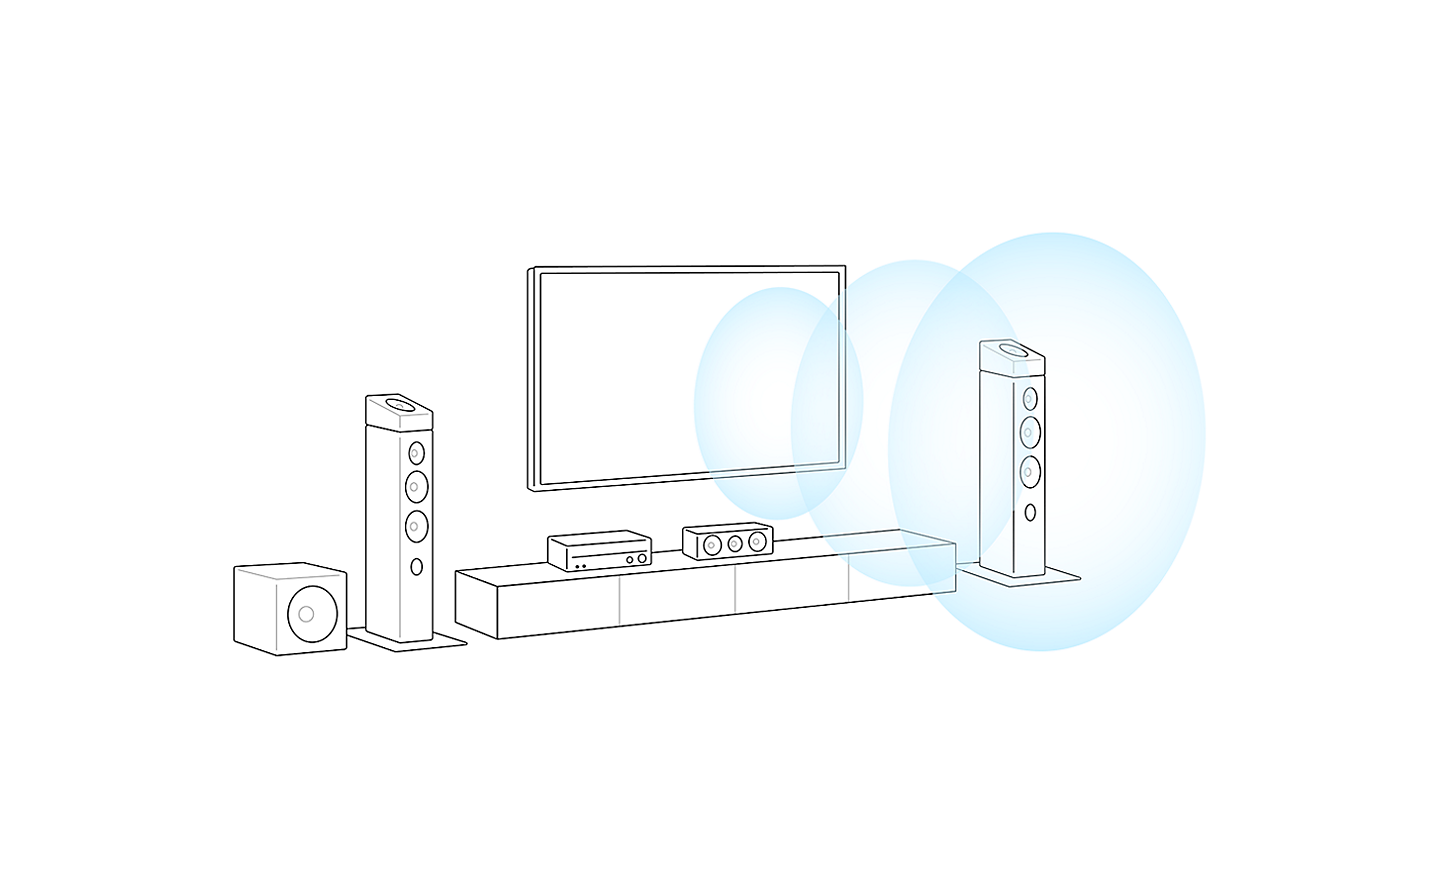 Imagen de una silueta de un equipo de televisión. Tres círculos azules salen del centro del televisor, representando la dirección del sonido